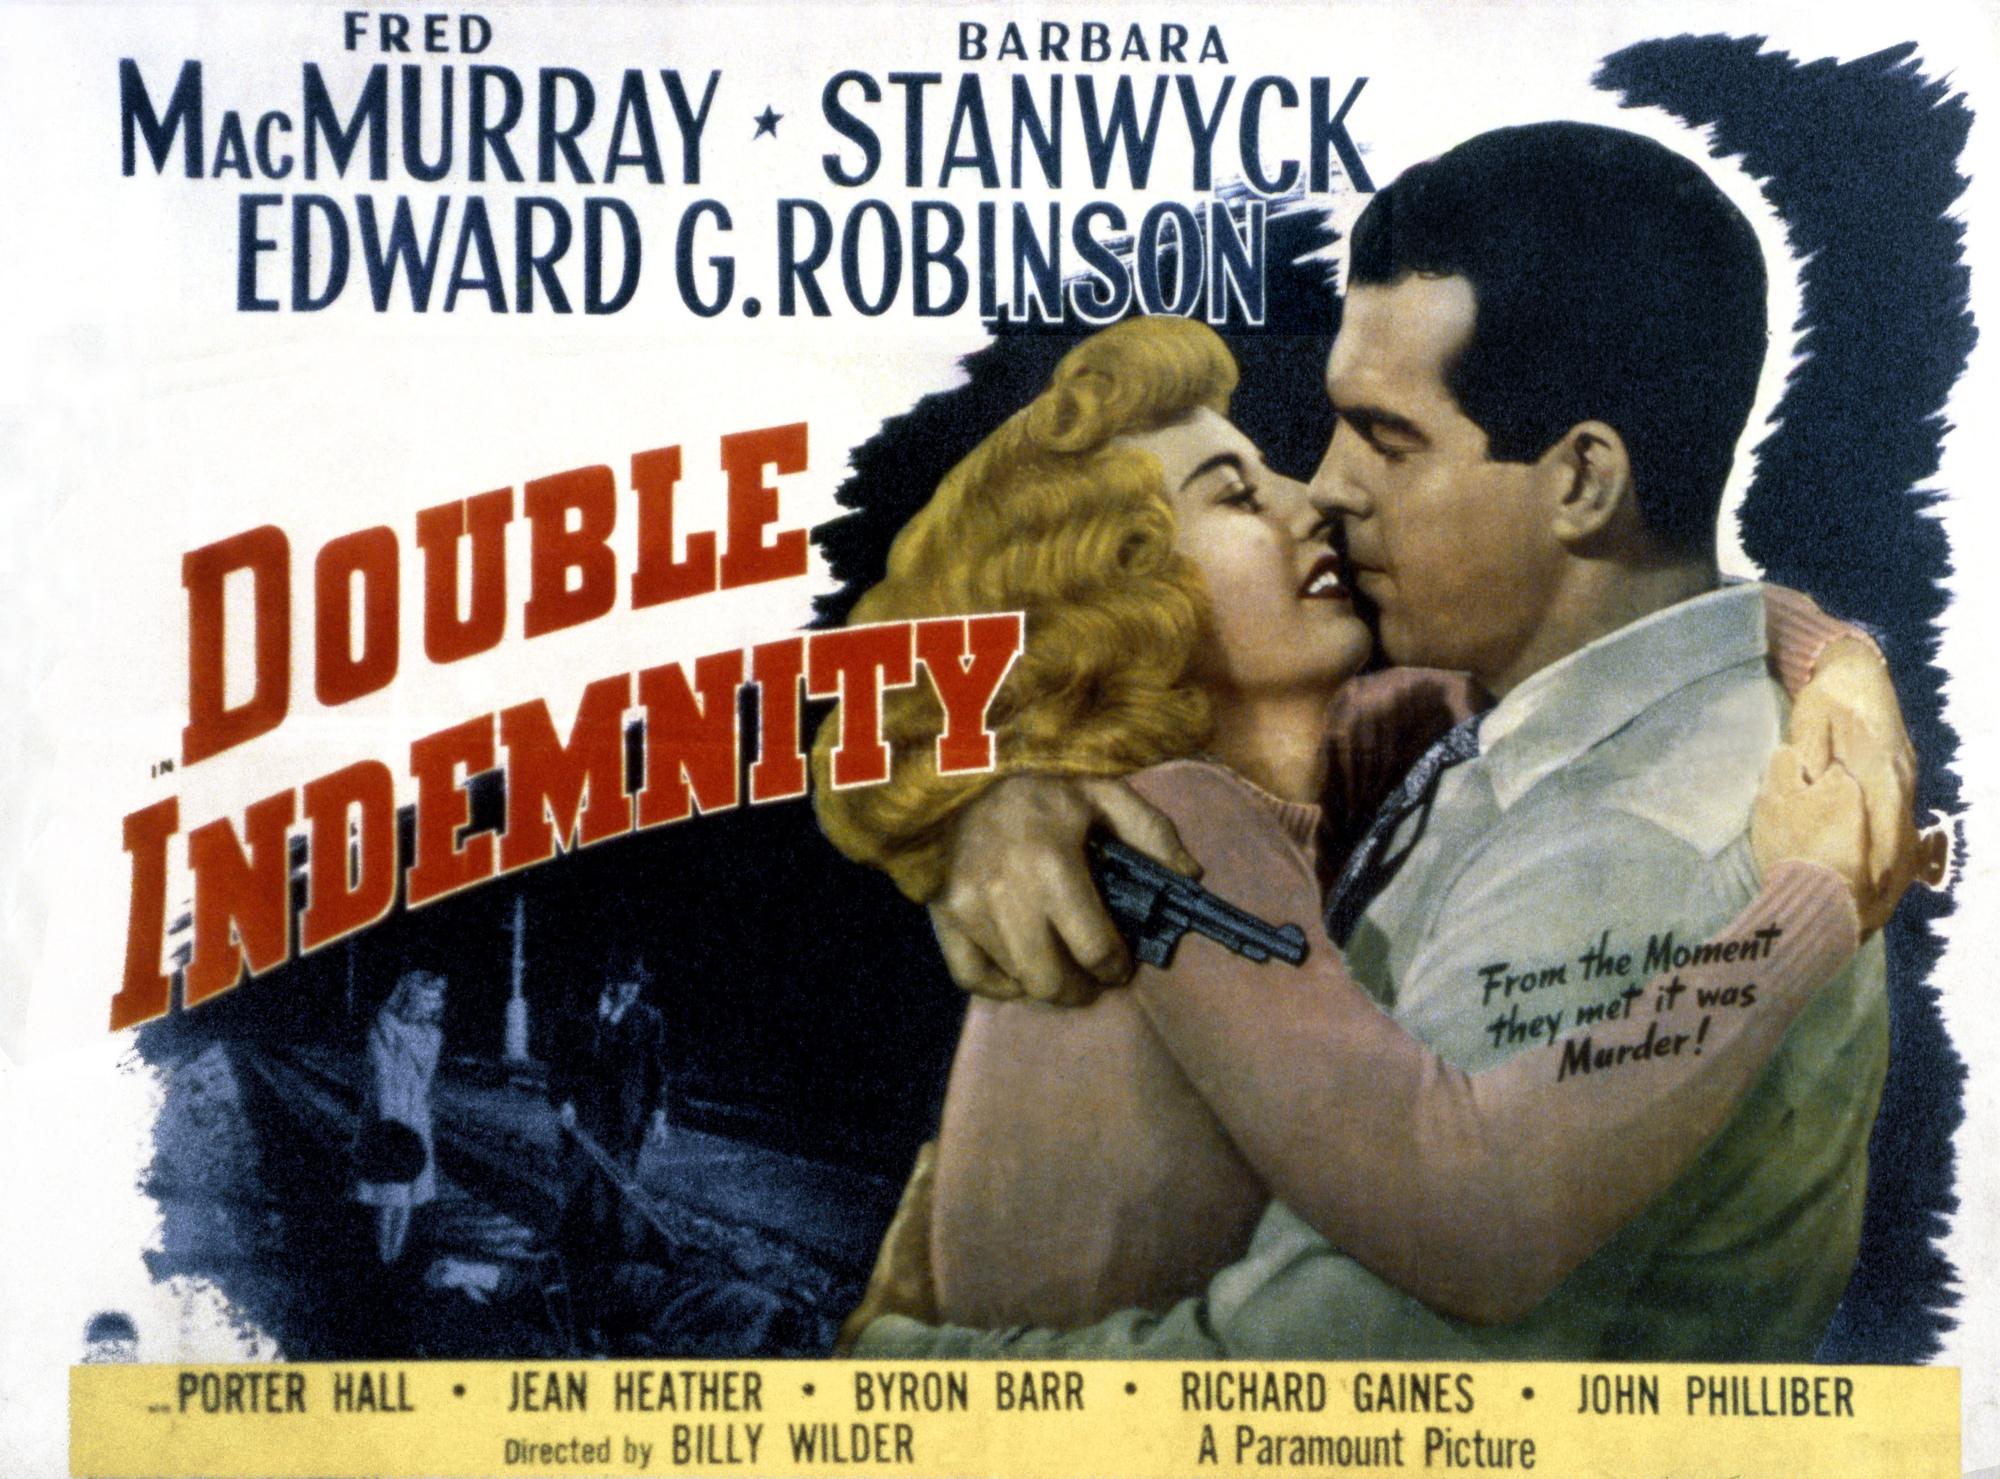 L'affiche du film "Assurance sur la mort" ("Double Indemnity") de Billy Wilder, souvent considéré comme l'archétype du film noir.